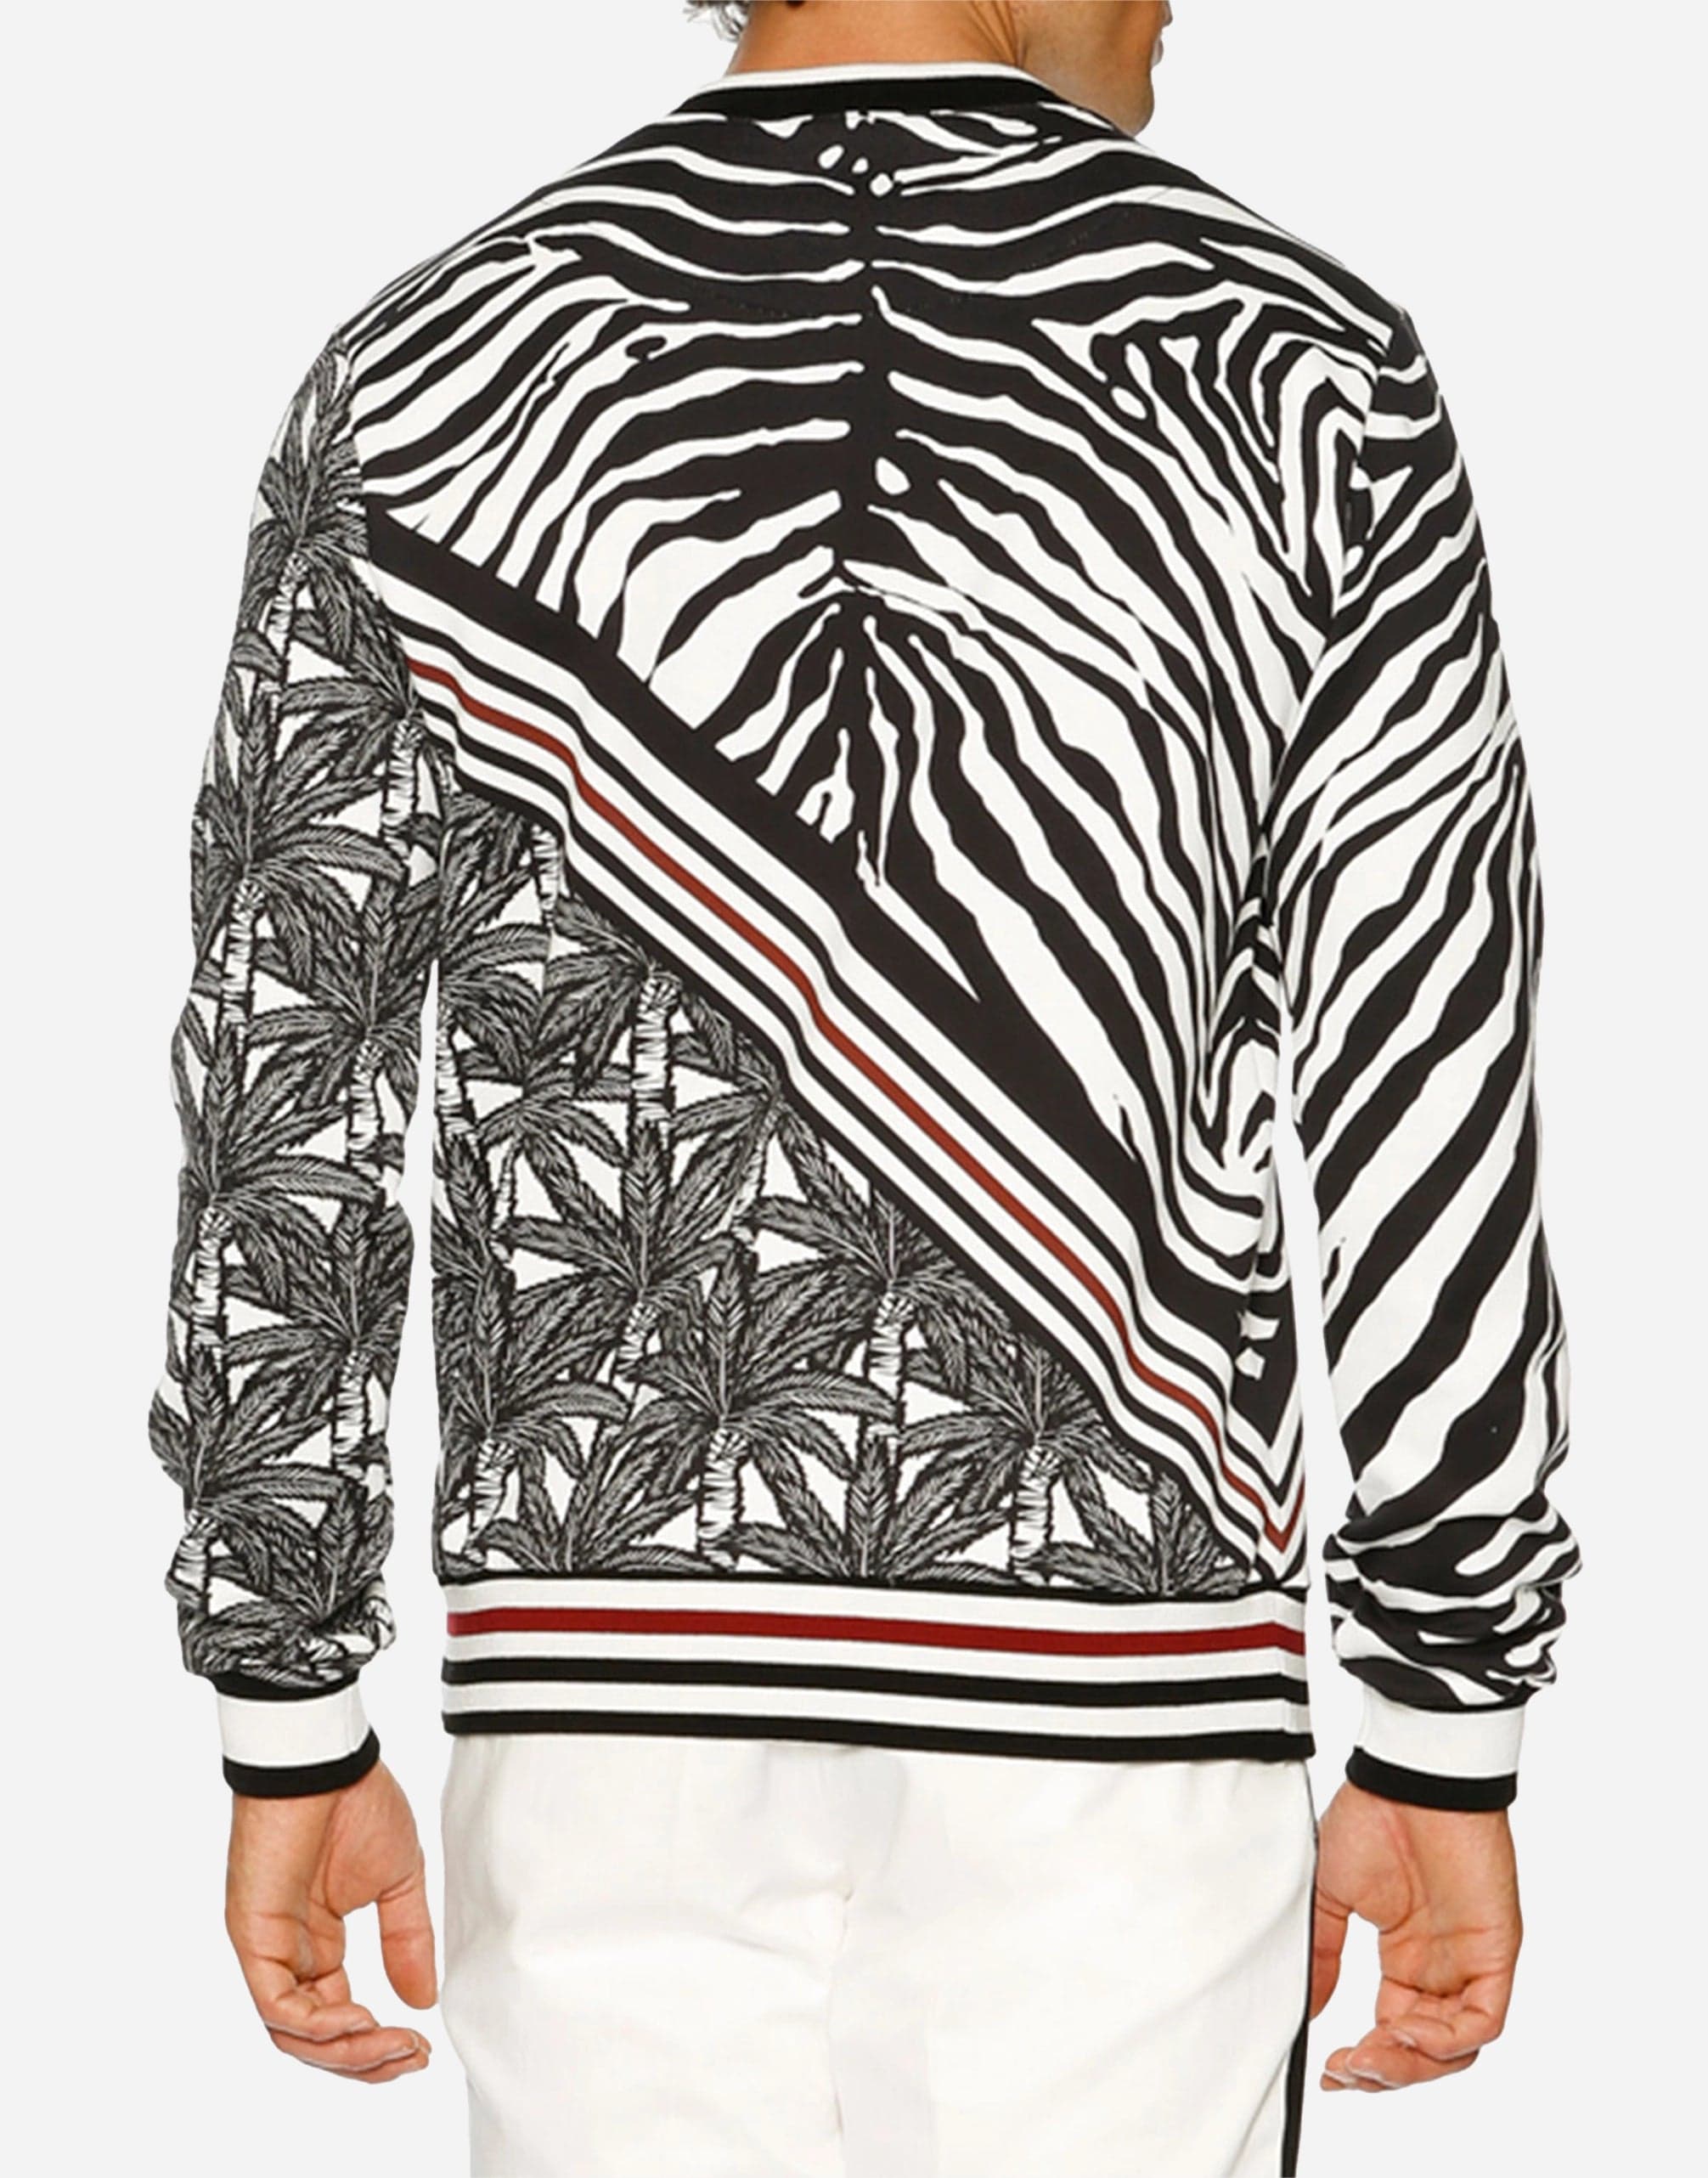 Dolce & Gabbana Zebra & Palm Tree Sweatshirt